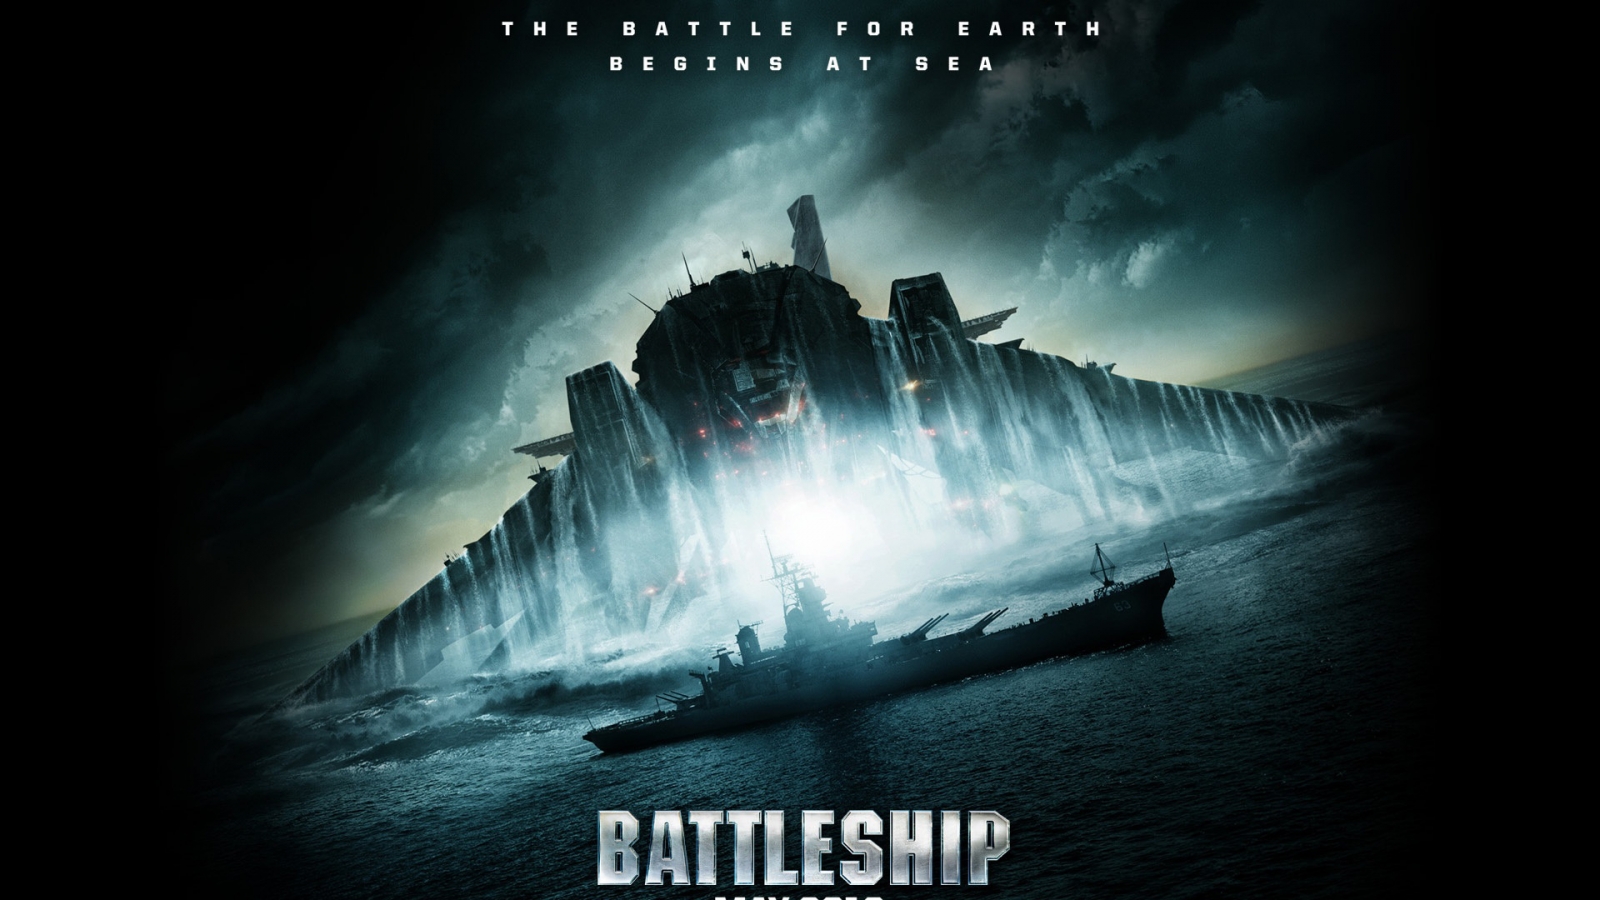 Battleship 2012 for 1600 x 900 HDTV resolution